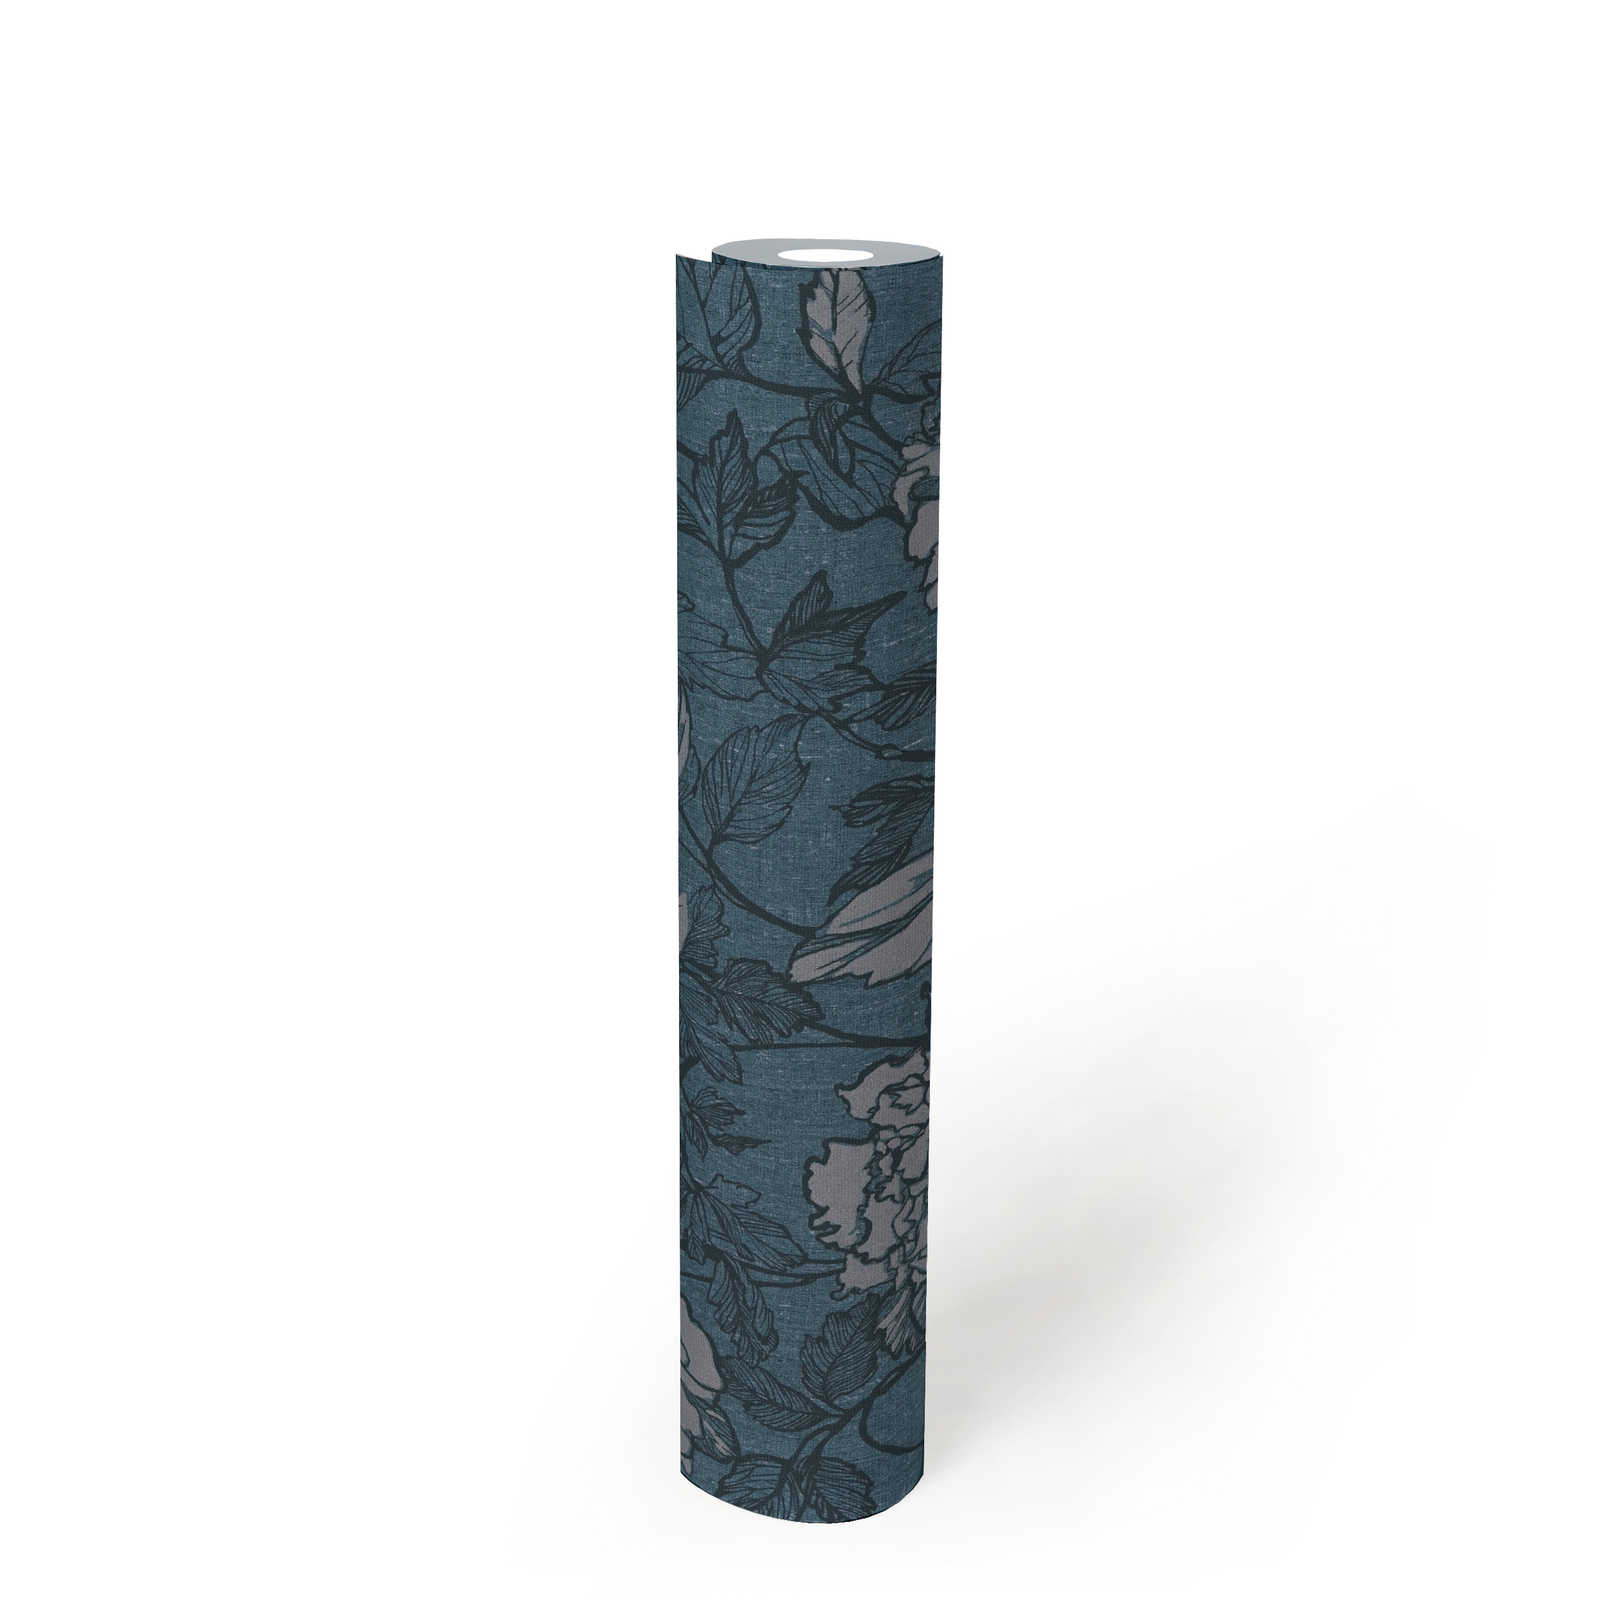             Papier peint aspect textile pétrole avec motif à fleurs - bleu, gris
        